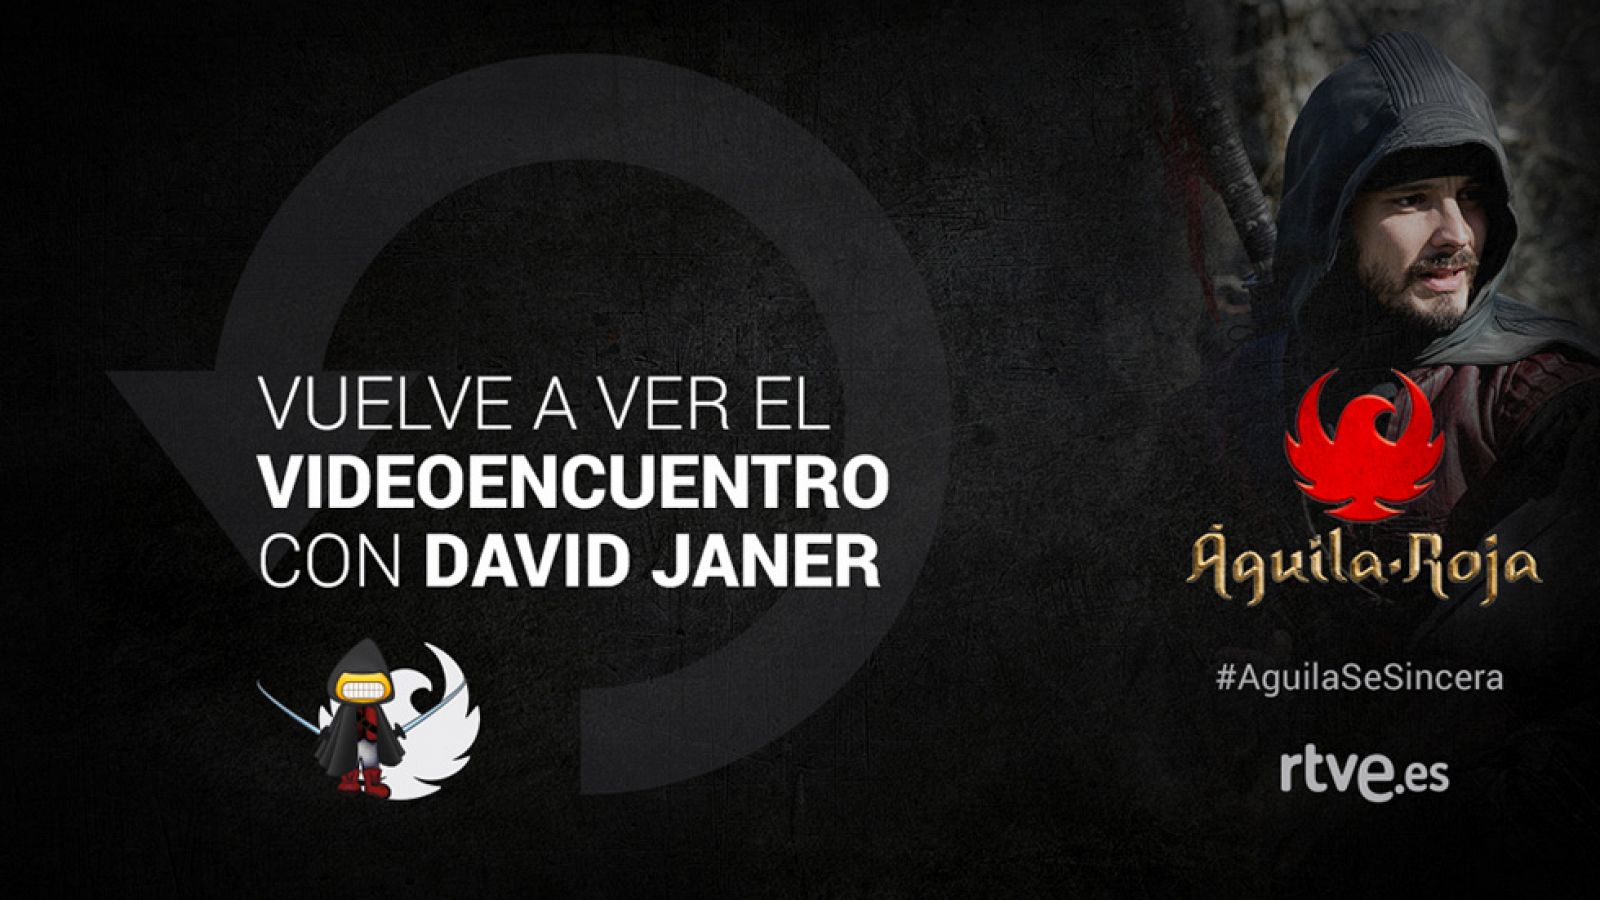 Vuelve a ver el videoencuentro #AguilaSeSincera con David Janer